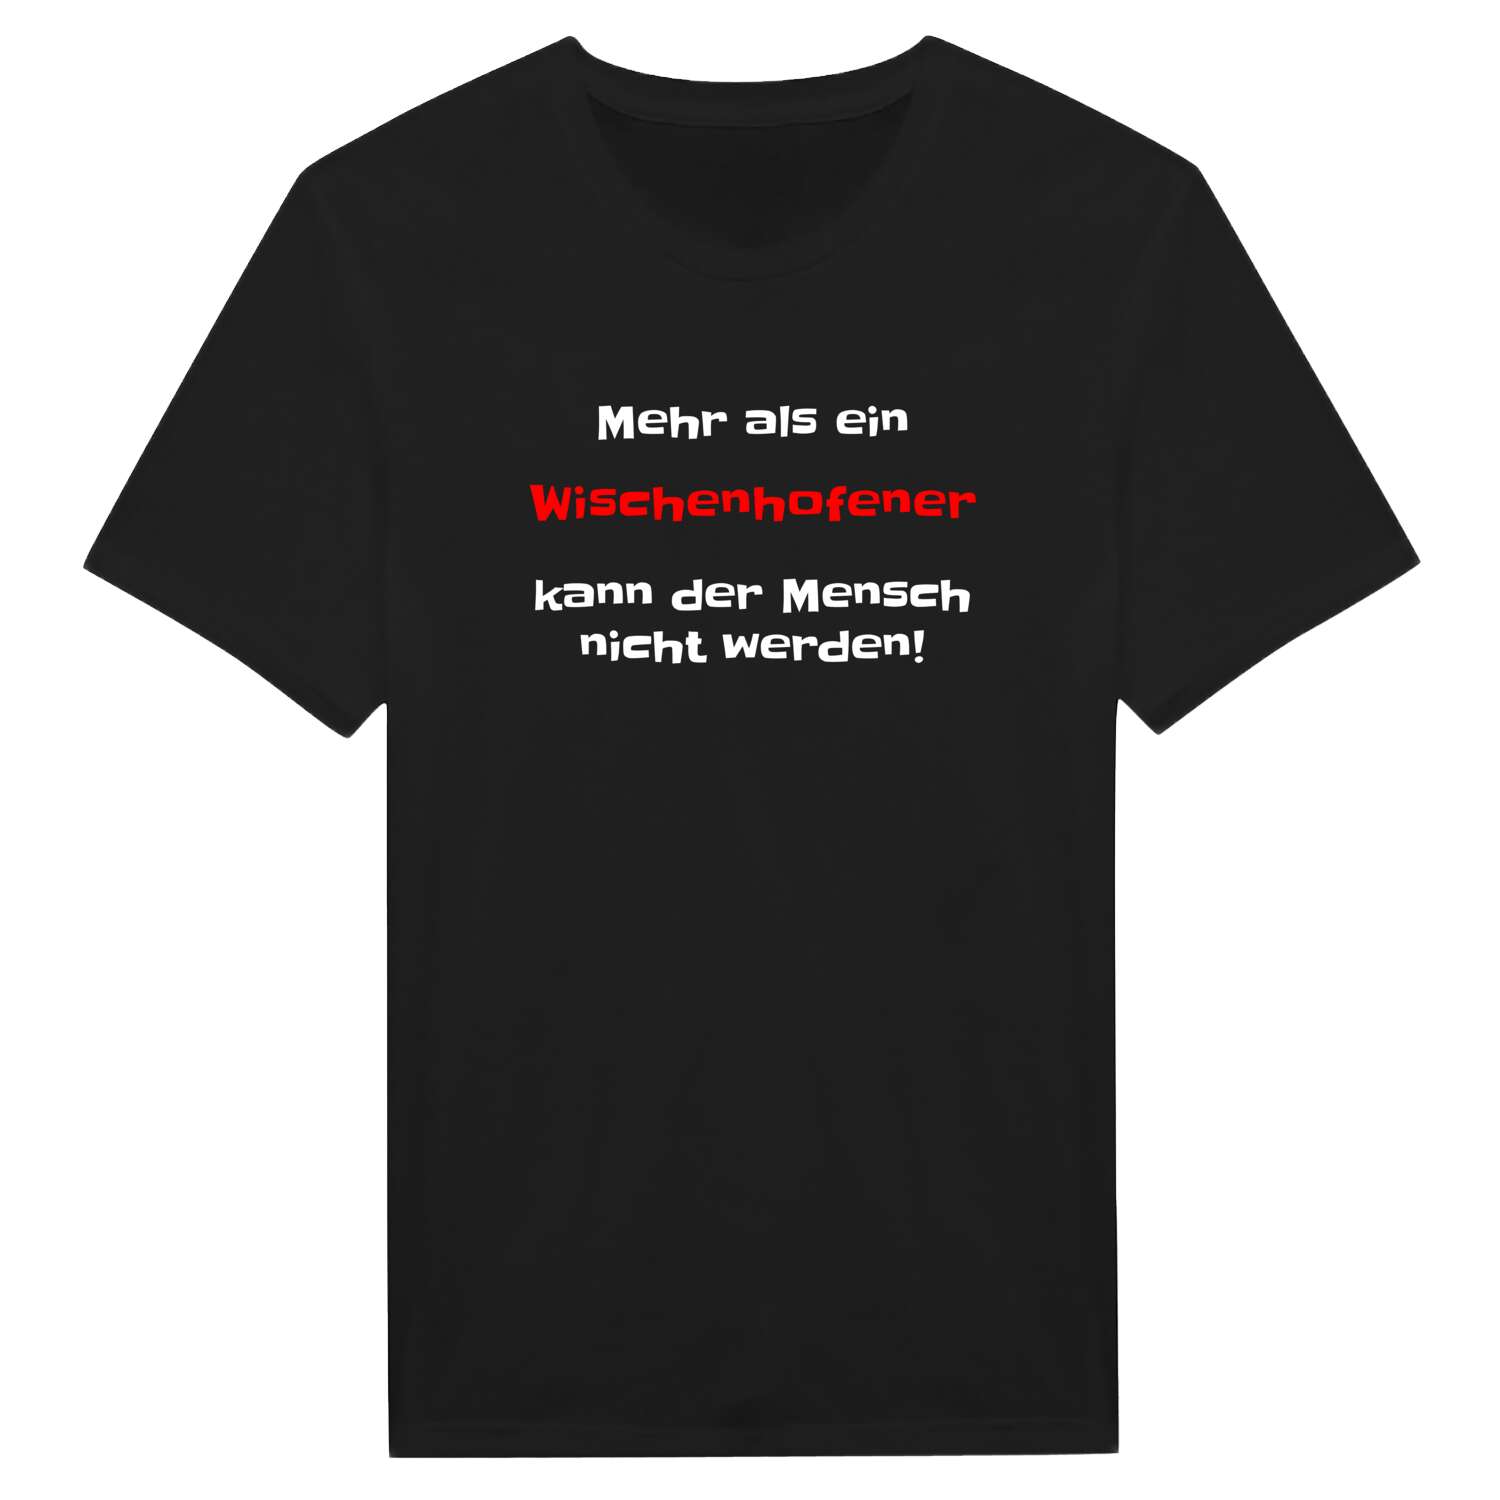 Wischenhofen T-Shirt »Mehr als ein«